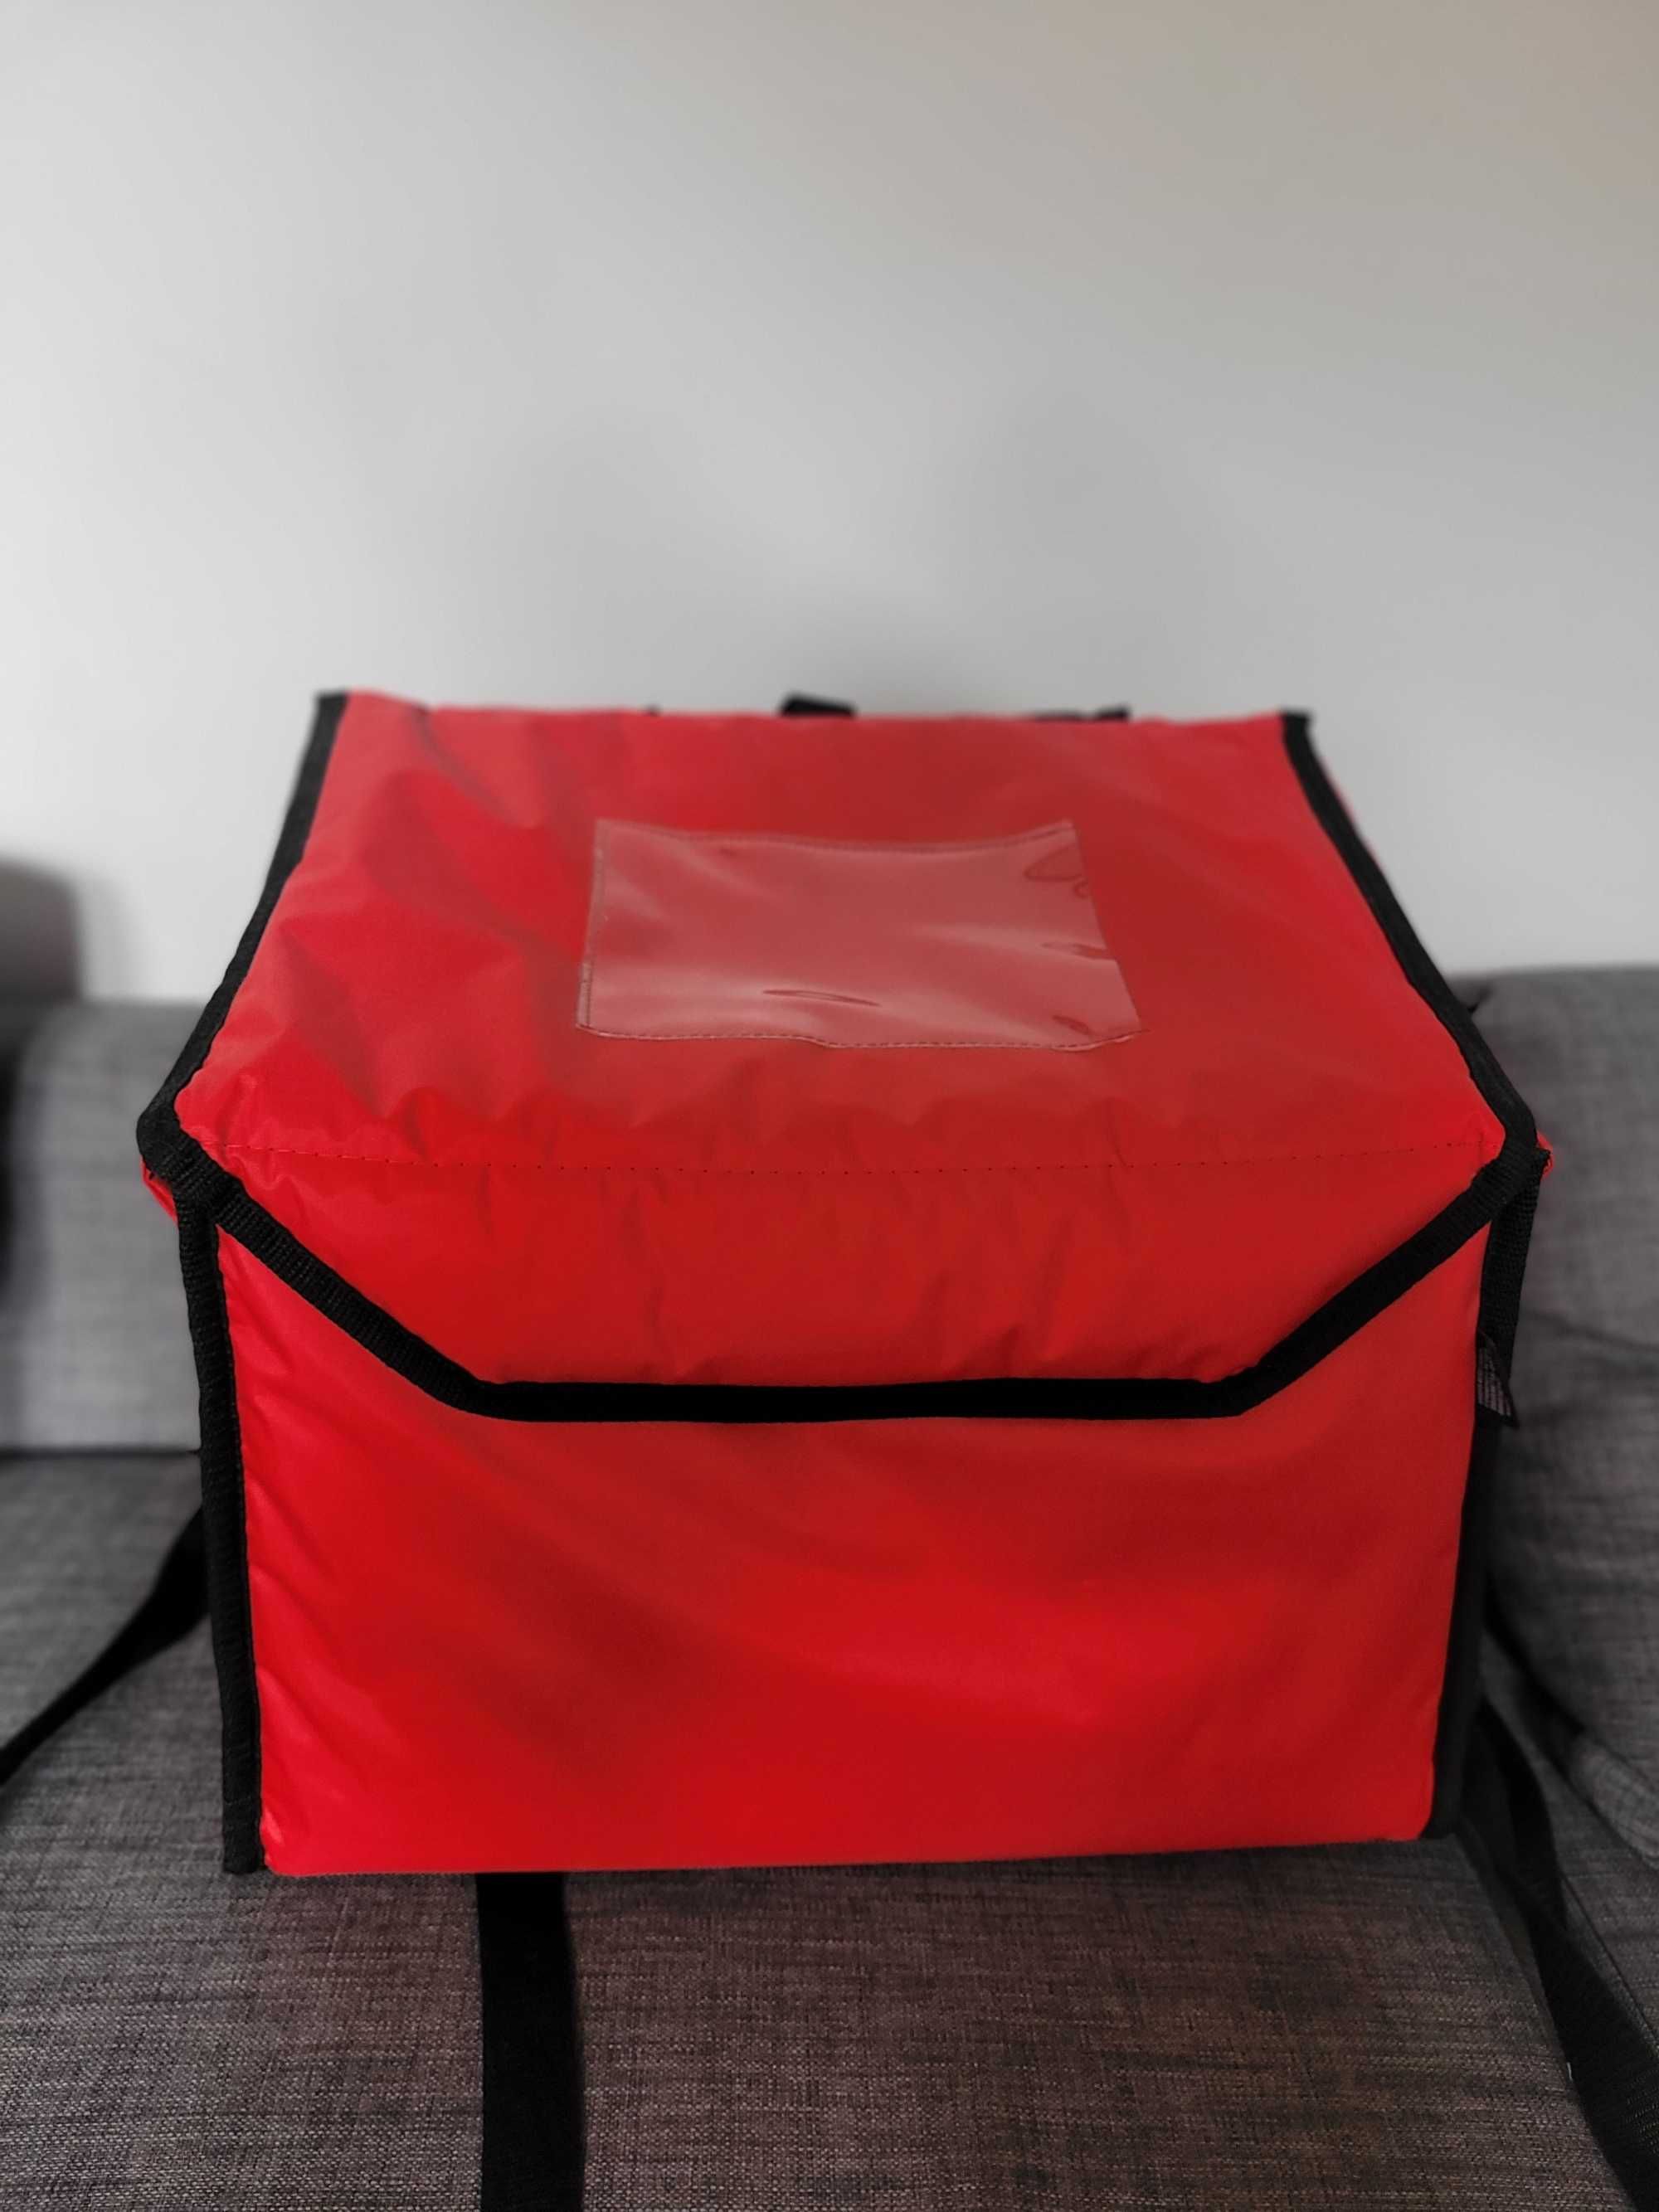 Plecak termiczny Furmis Lunchbox-6. Catering, transport, dostawa.